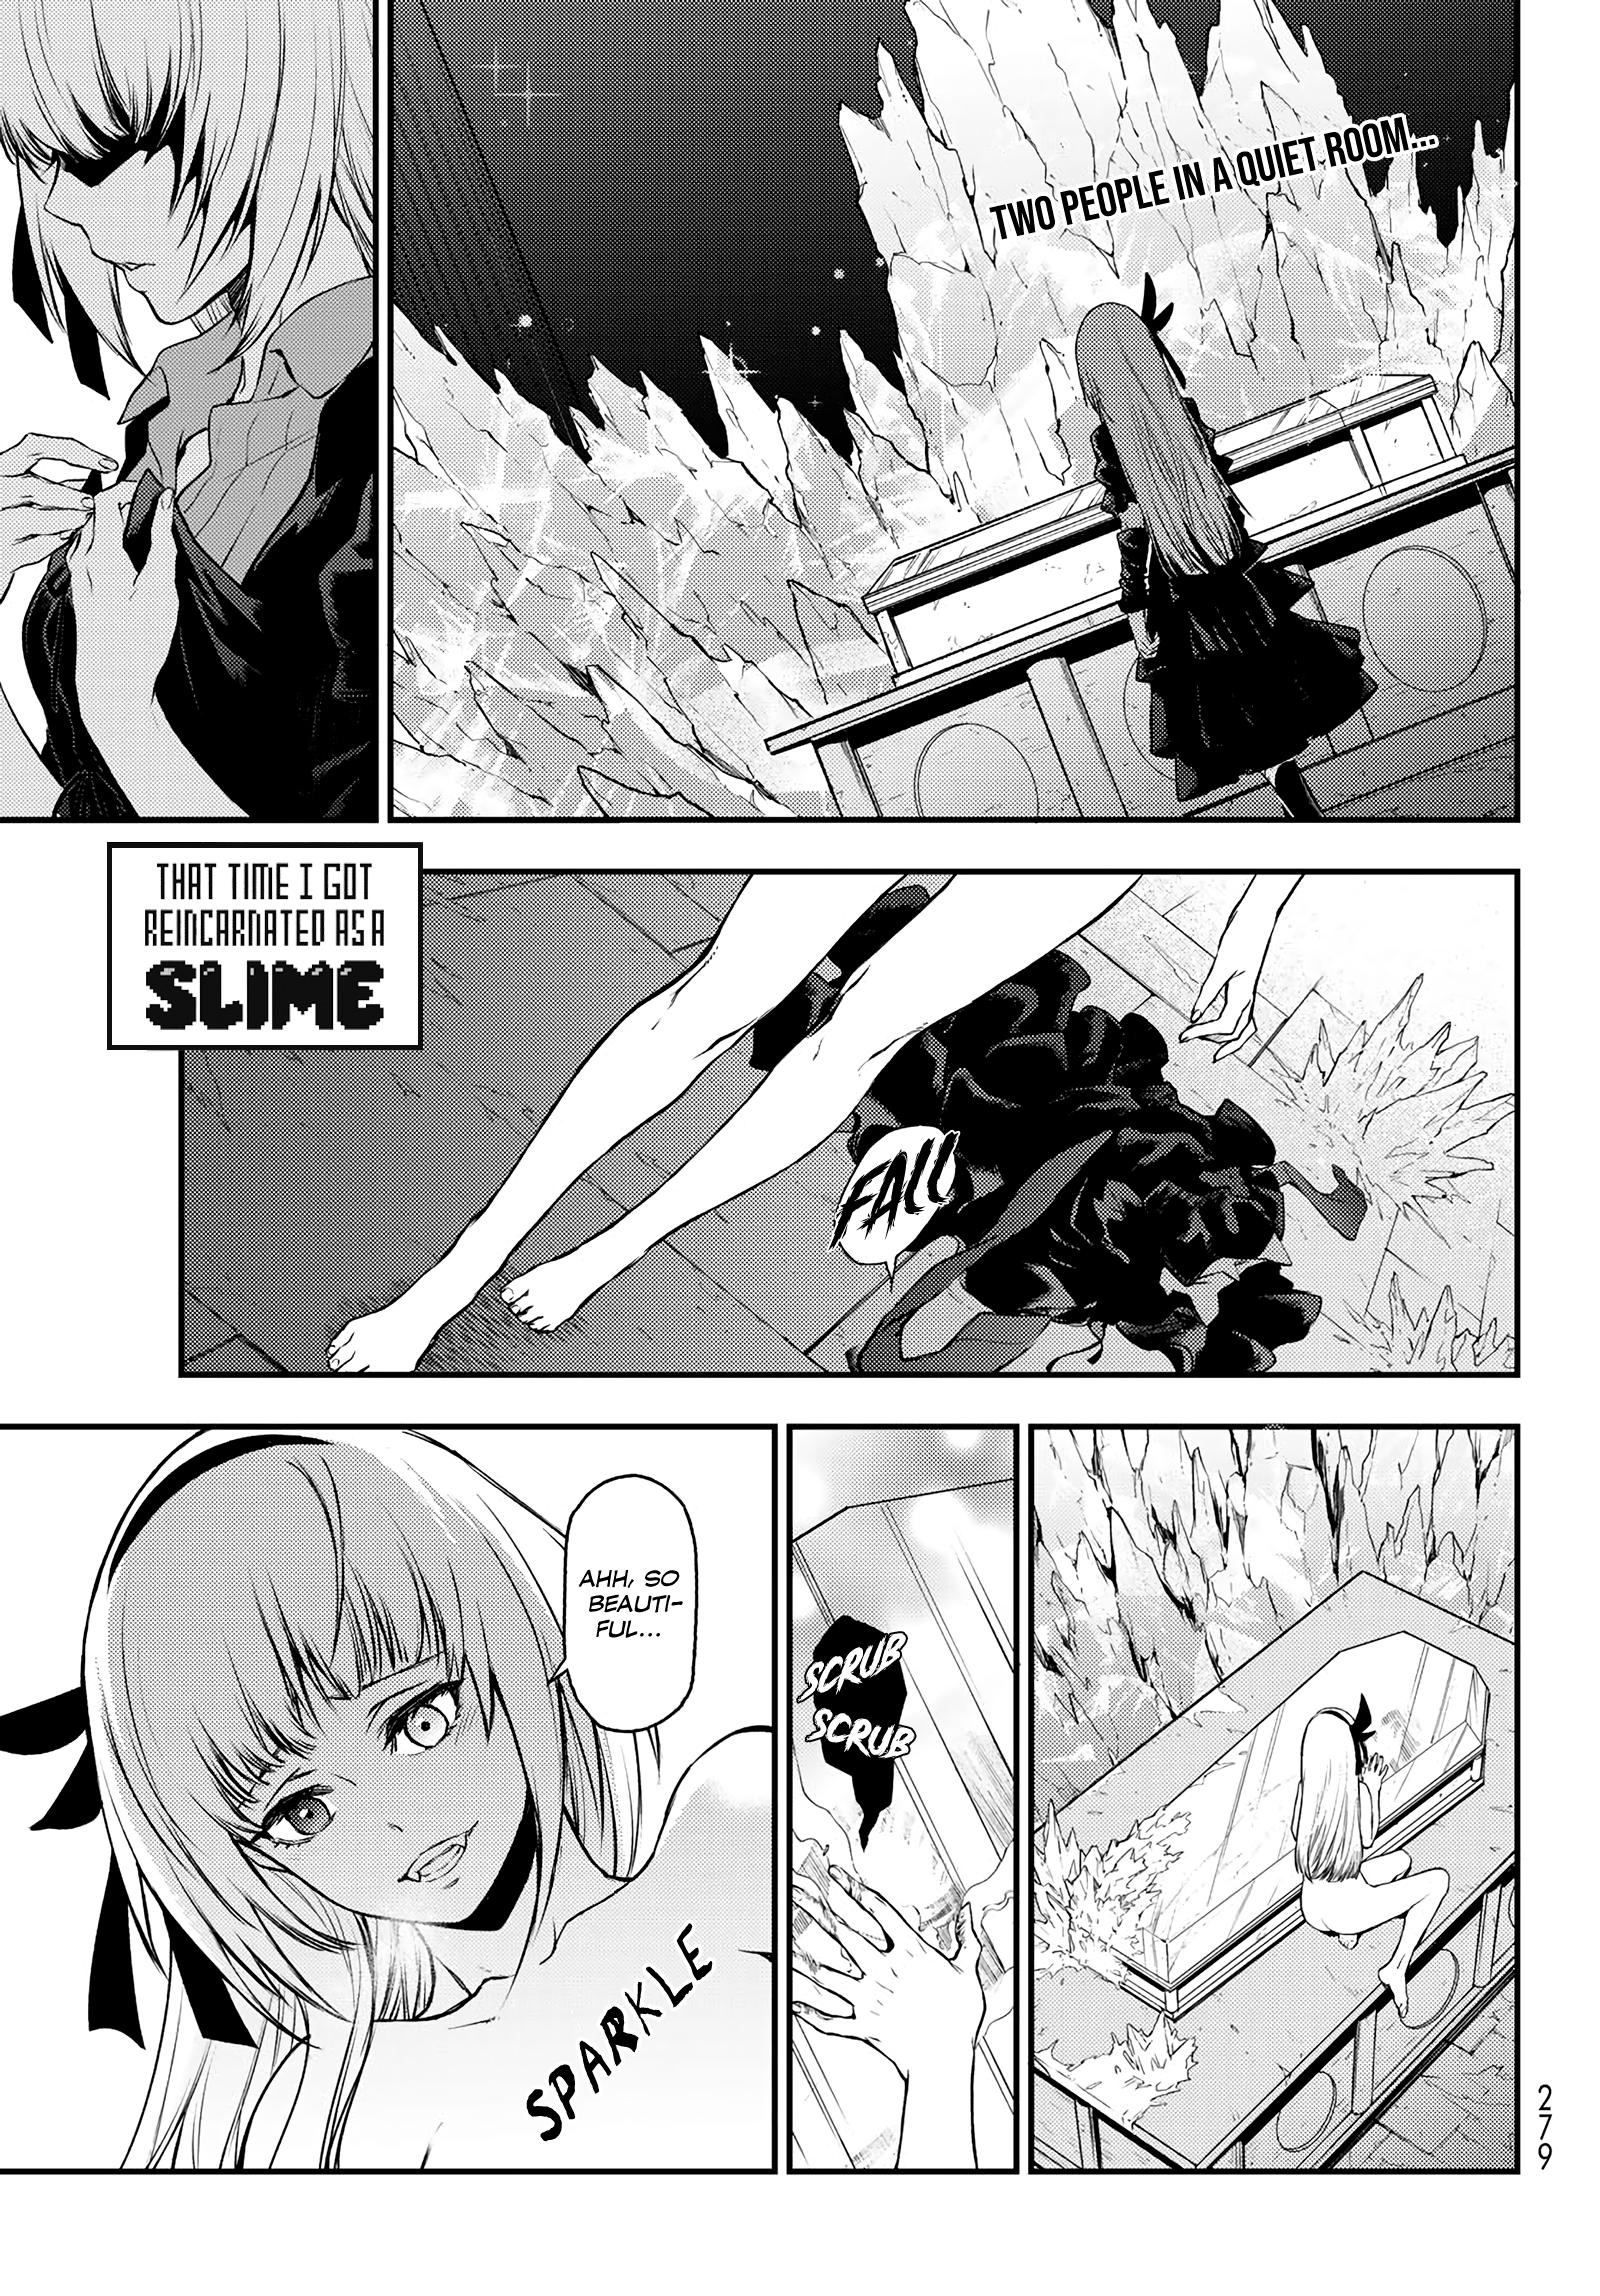 Tensei Shitara Slime Datta Ken, Chapter 112 - Tensei Shitara Slime Datta  Ken Manga Online